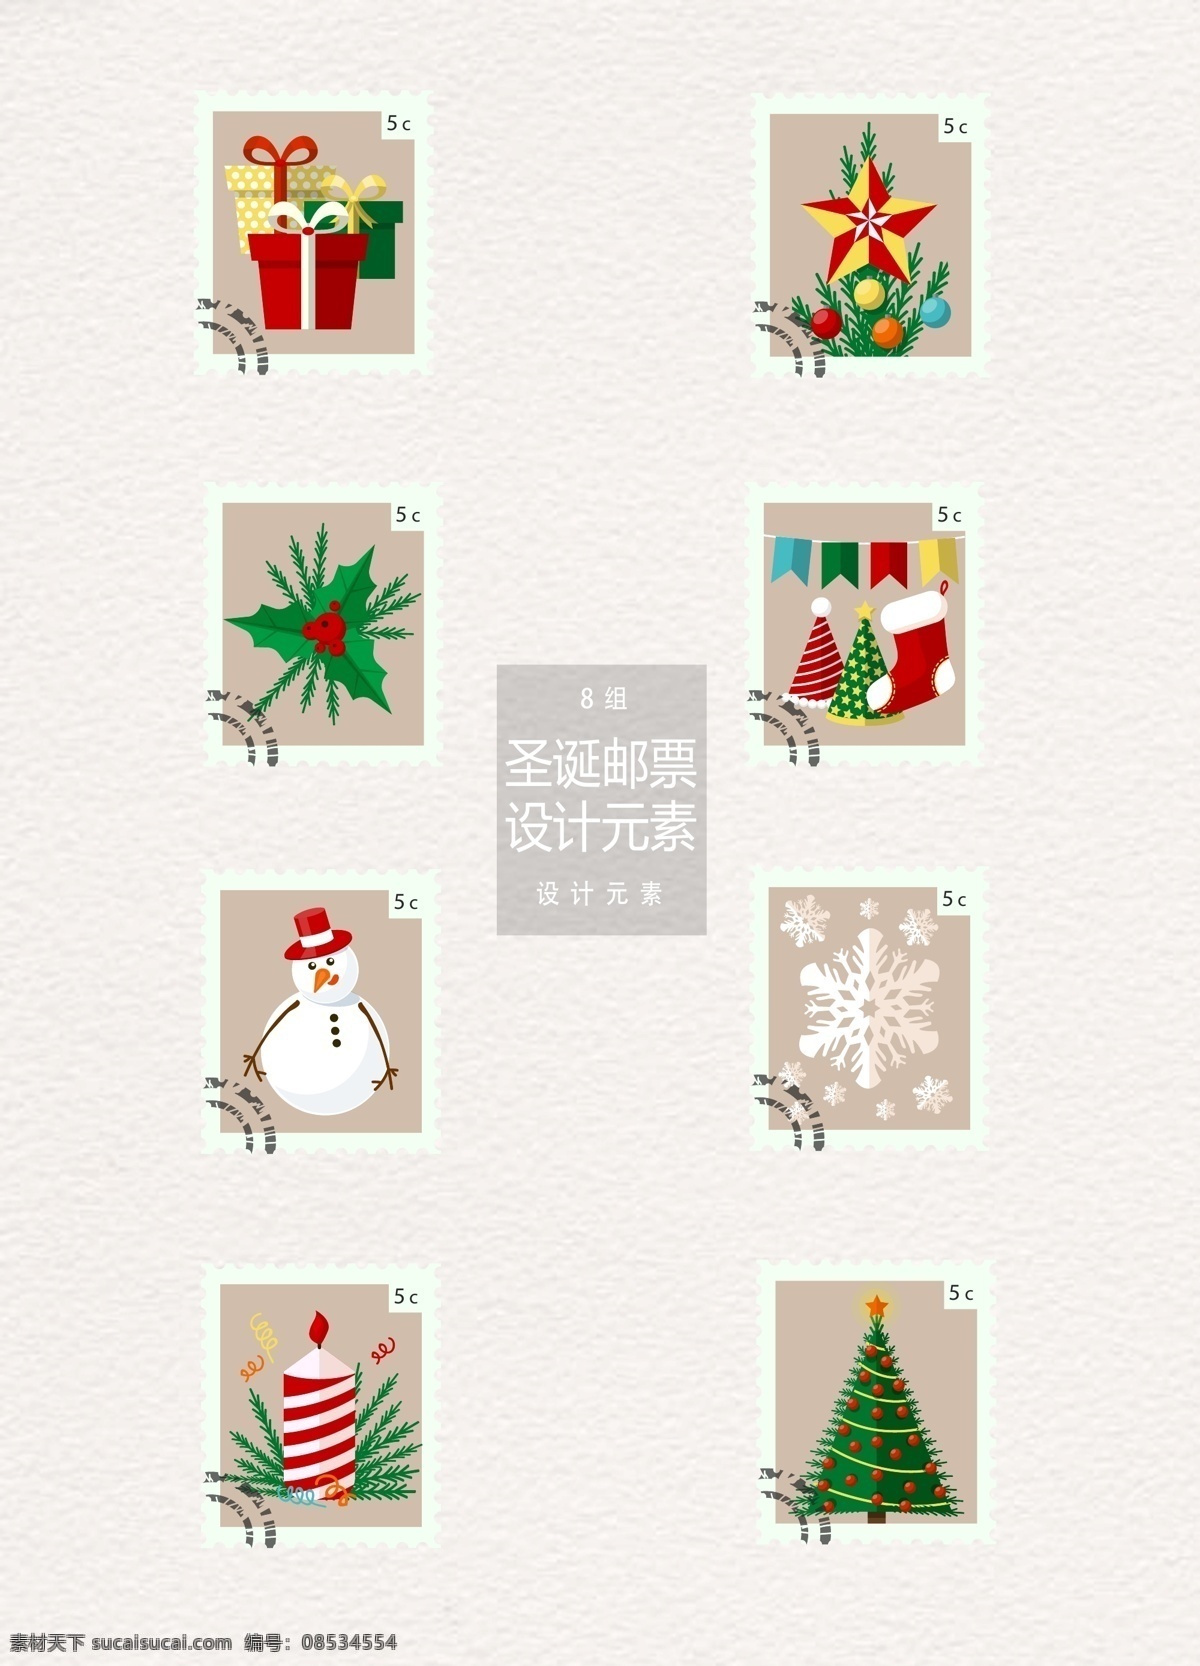 圣诞节 邮票 标签 元素 标签设计 圣诞树 蜡烛 礼物 圣诞 圣诞节邮票 圣诞标签 雪人 圣诞袜